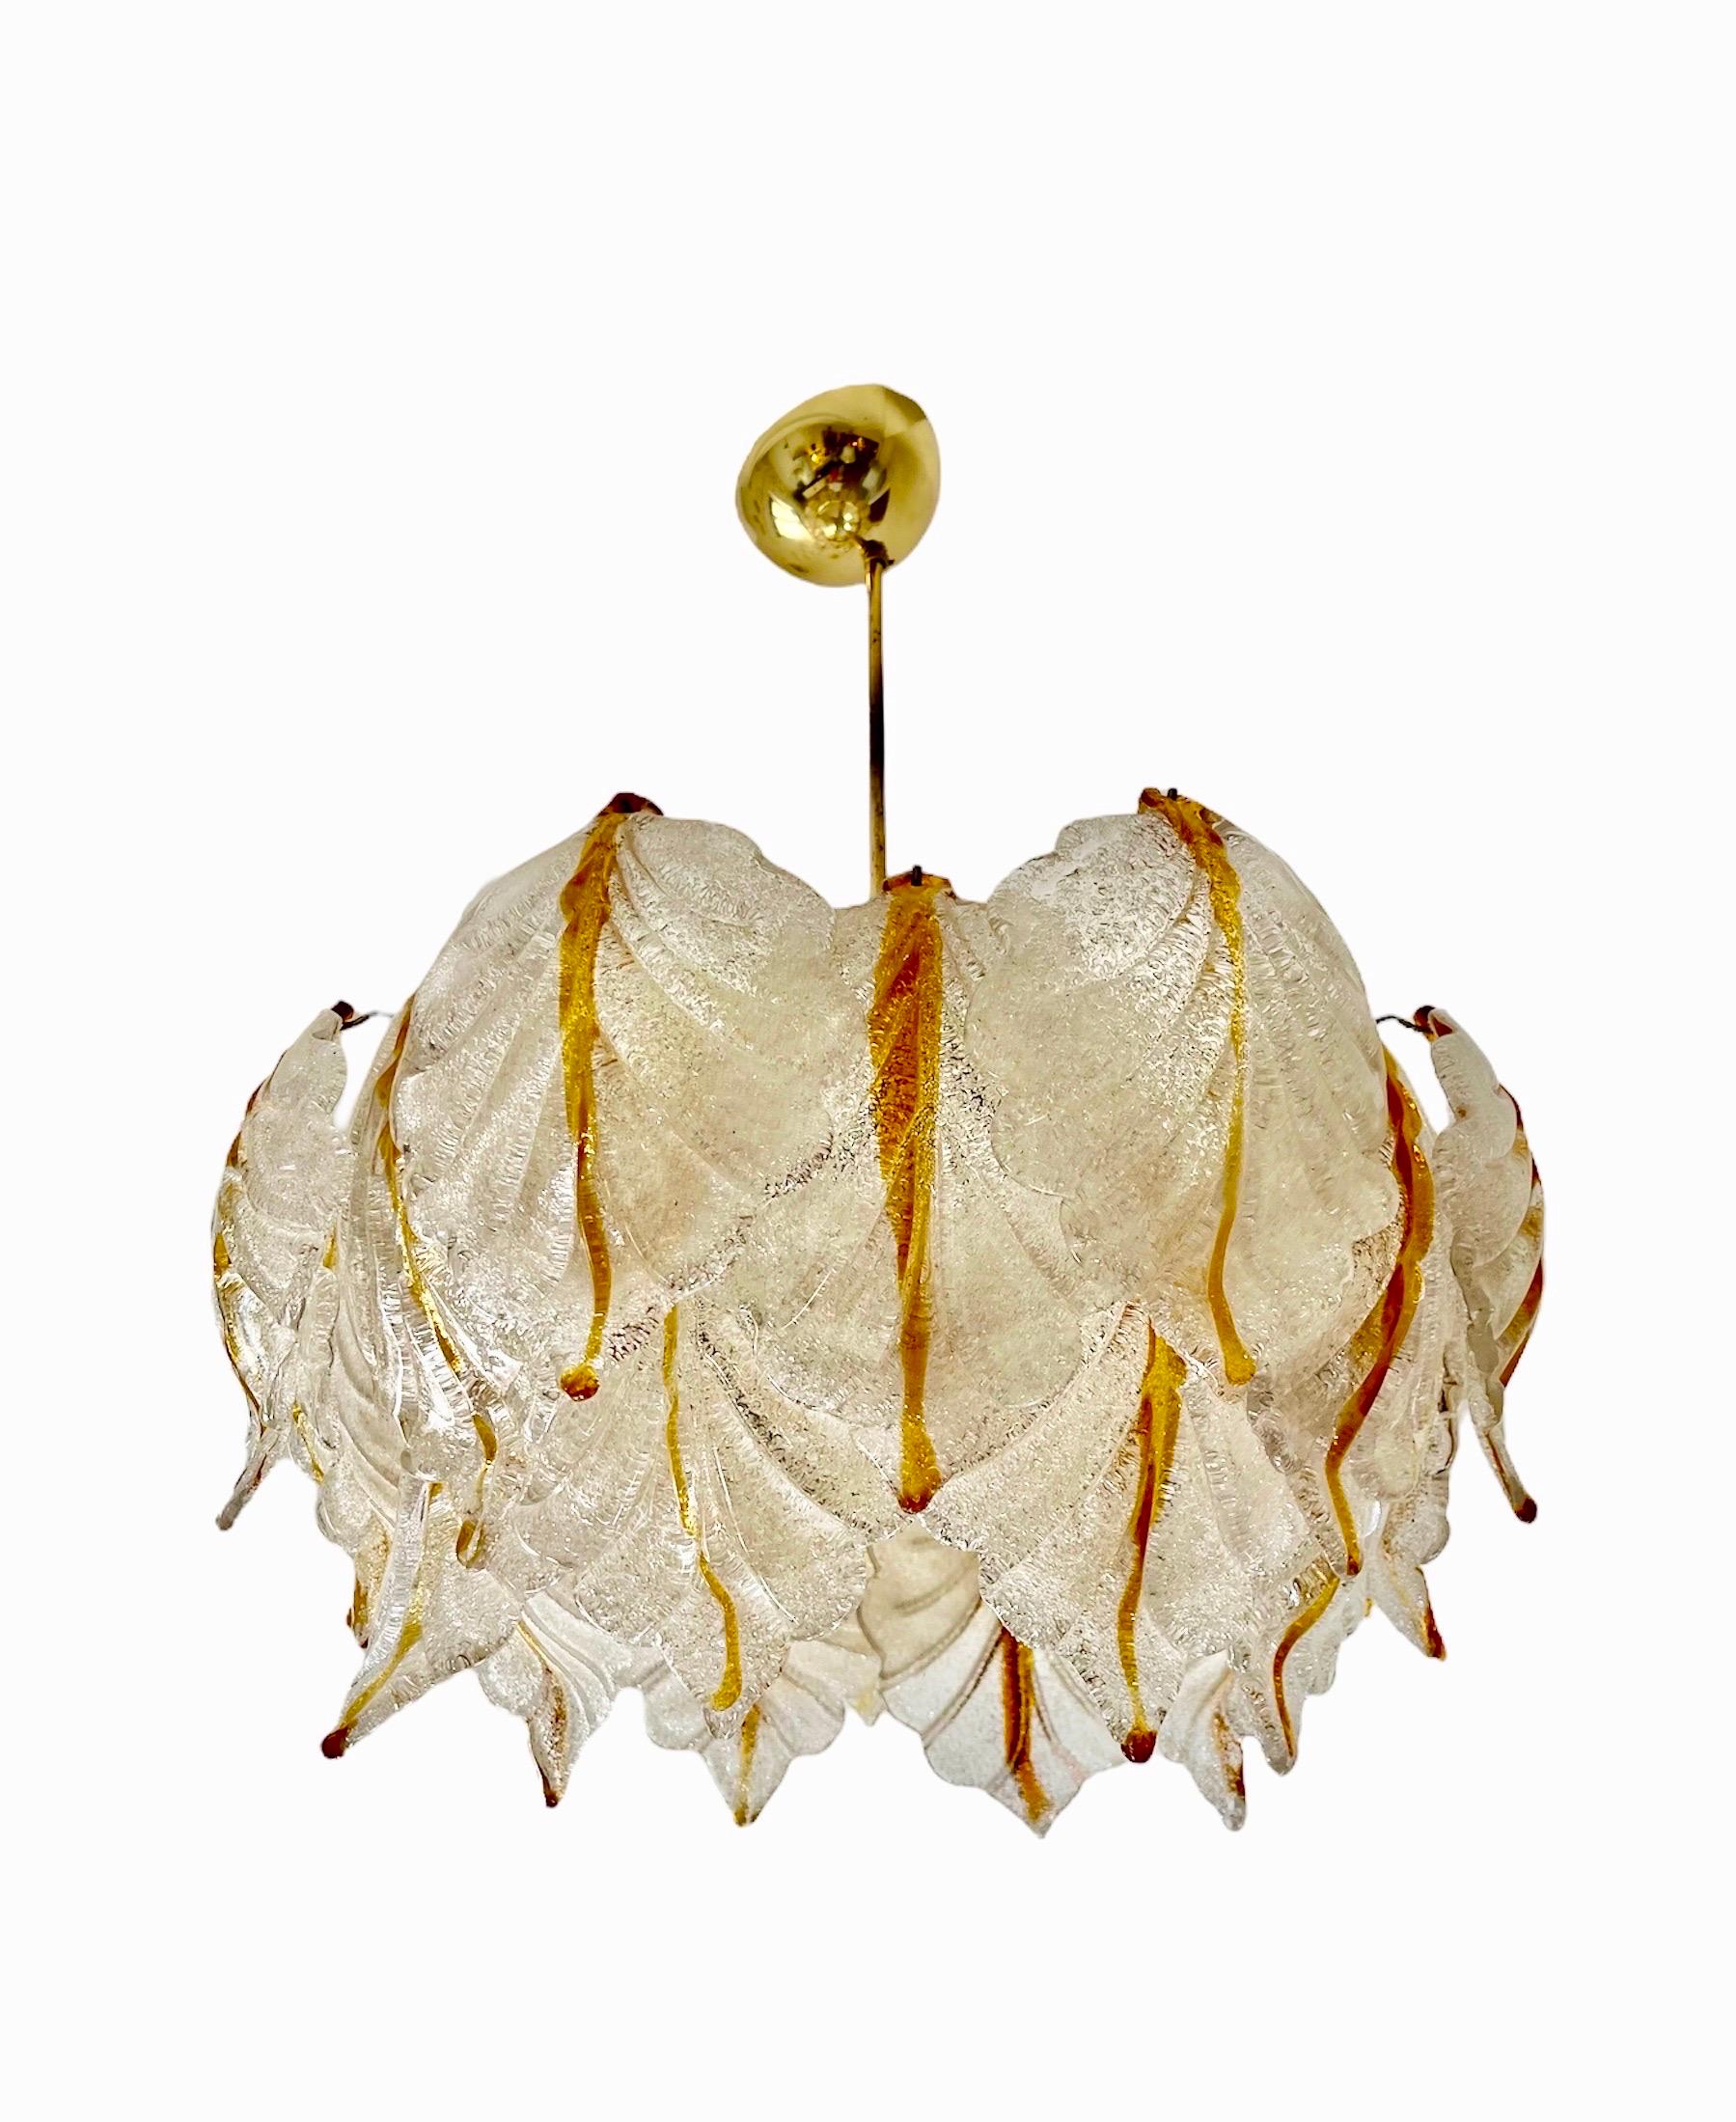 Exceptionnel lustre Mazzega à grandes feuilles en verre bicolore Murano avec structure en or doré. Le design et la qualité du verre font de cette pièce le meilleur du design italien.
Ce lustre unique de Murano en verre bicolore glacé est